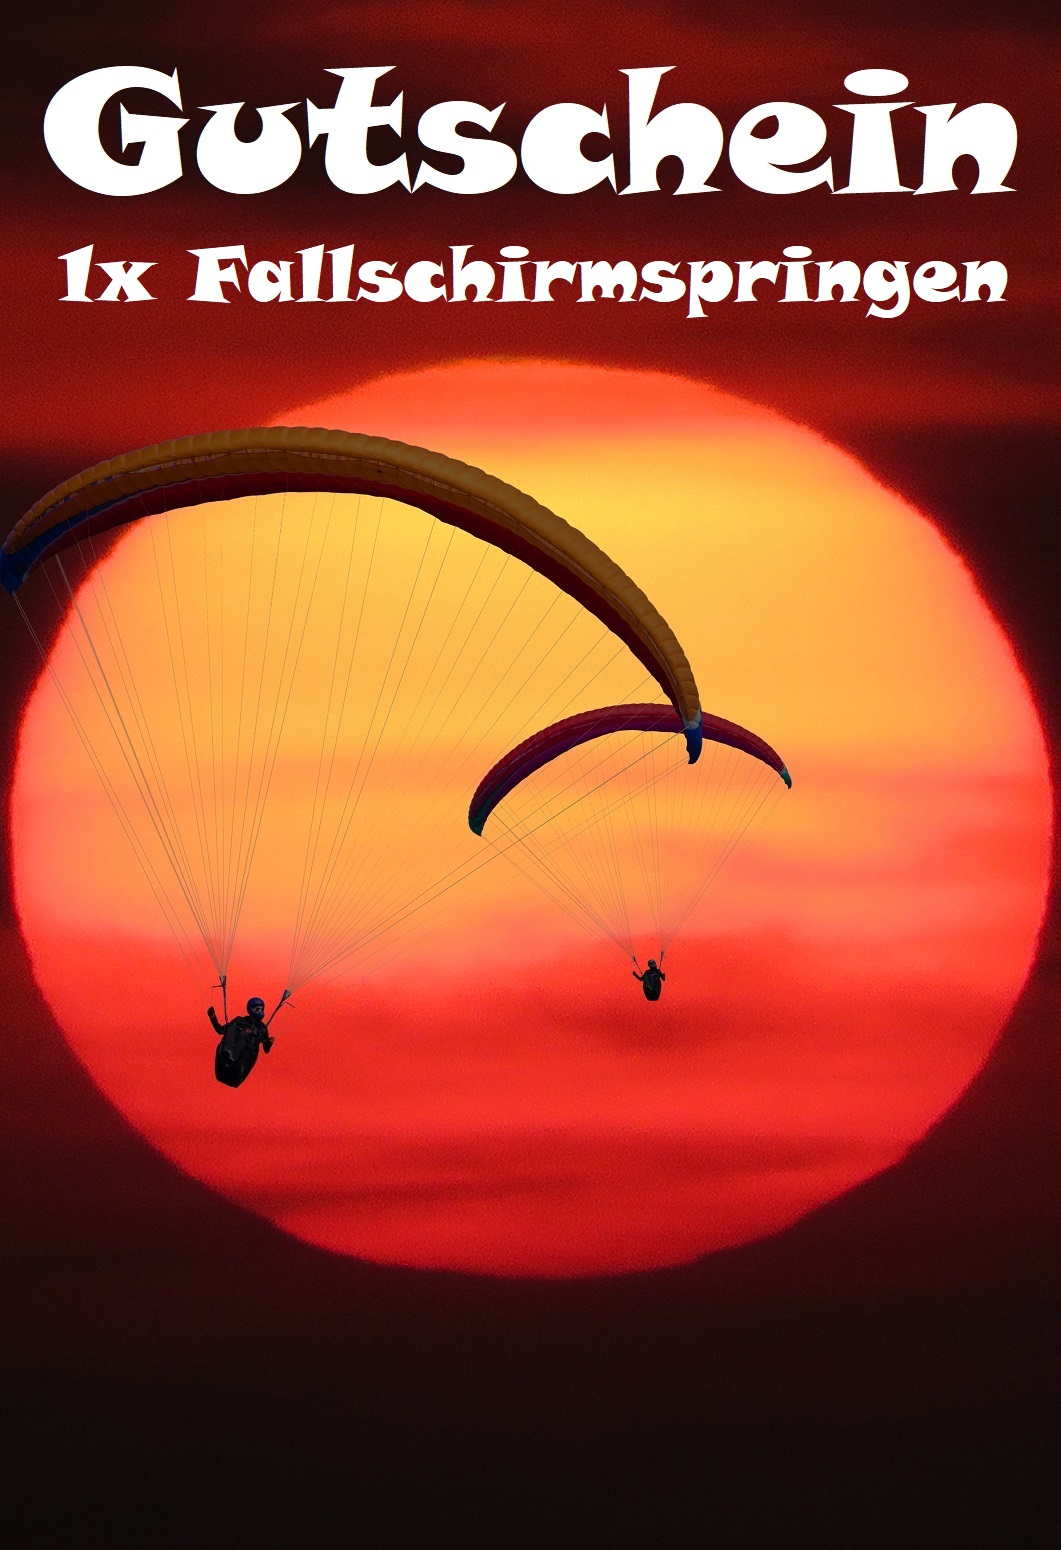 Fallschirmspringen: Adrenalin beim freien Fall | Gutscheinspruch.de